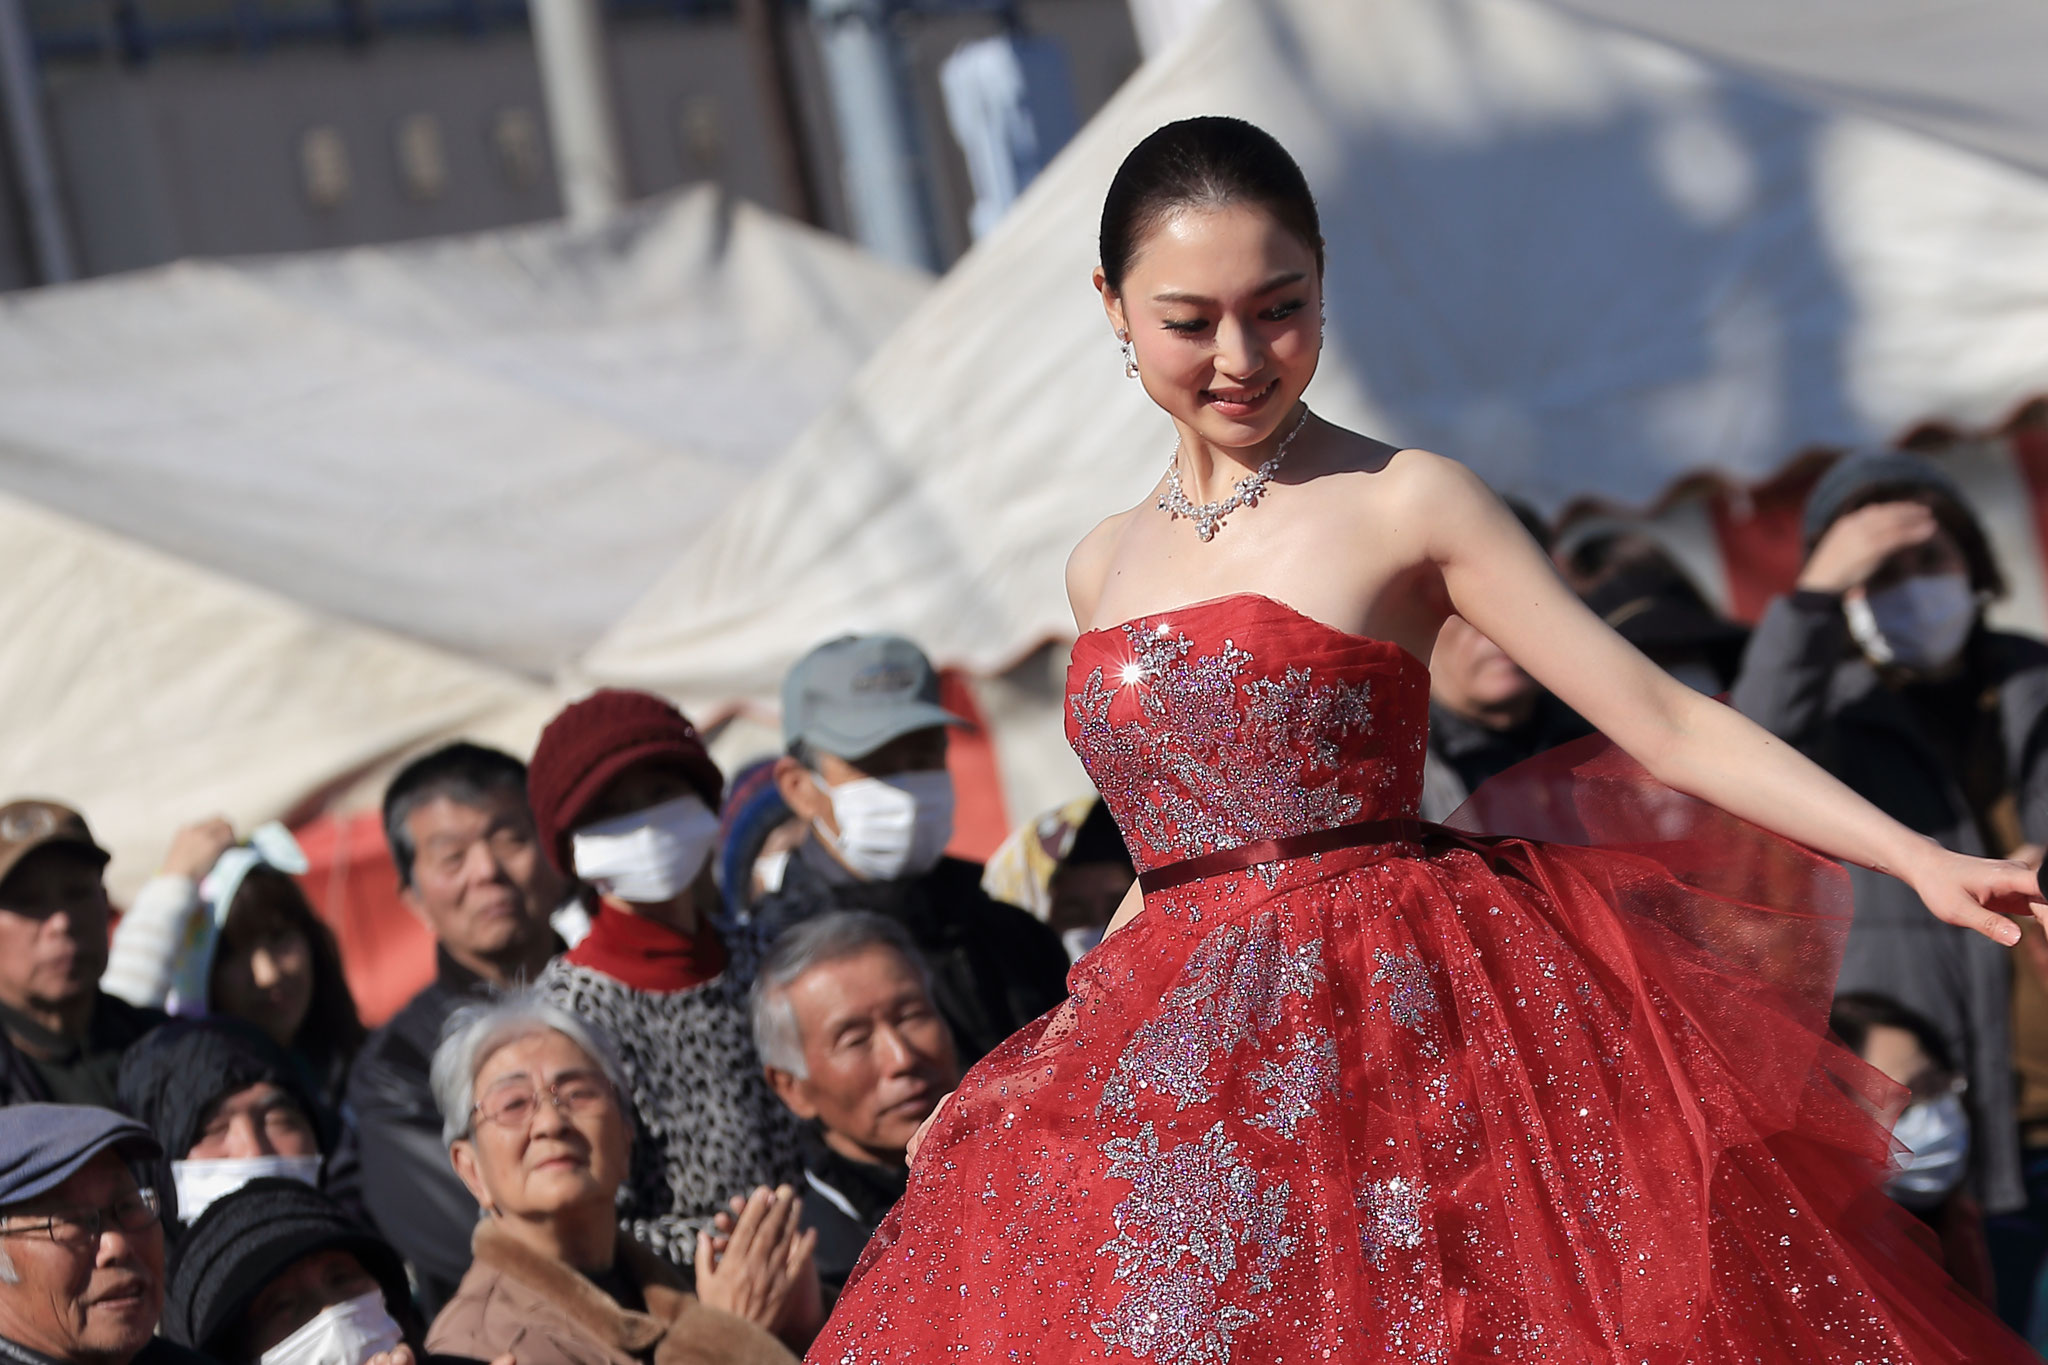 赤いドレスと装飾が魅了する。(1/27 鹿屋市串良町)